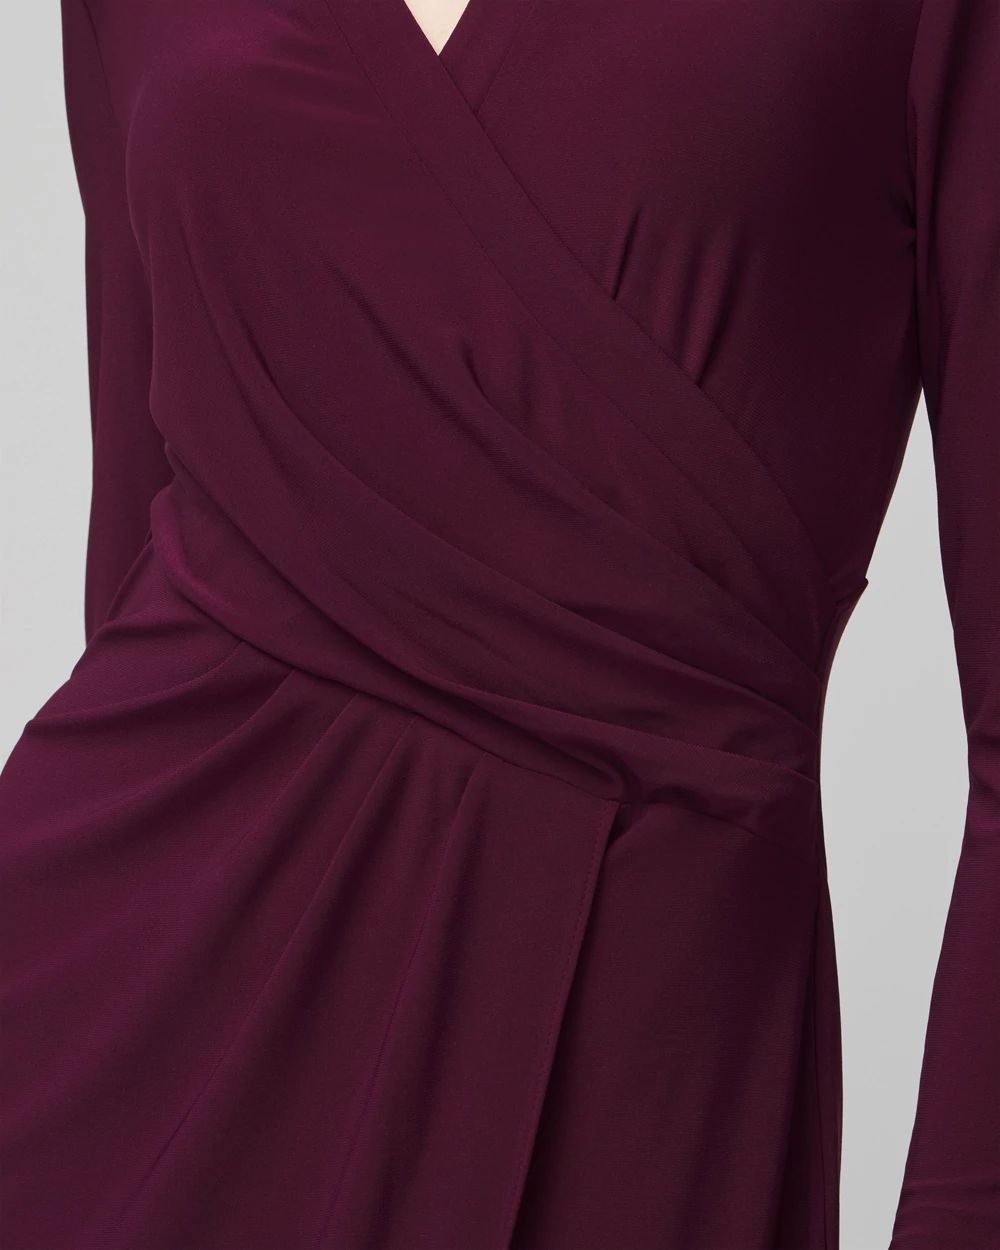 Petite Long Sleeve Matte Jersey Faux Wrap Midi Dress